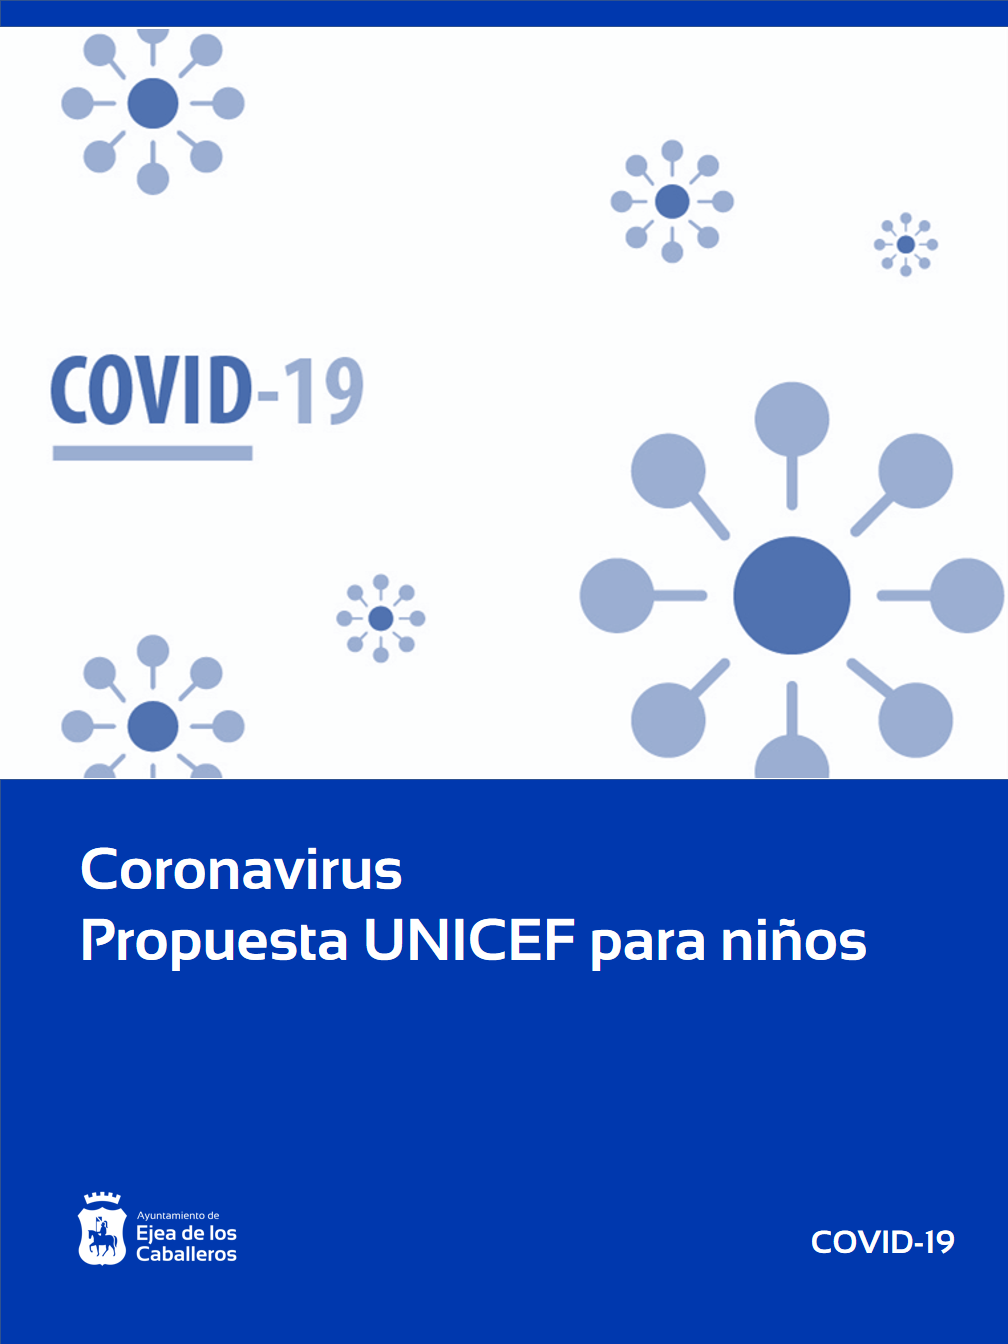 En este momento estás viendo Unicef lanza una propuesta para todos los niños durante el confinamiento por el COVID-19